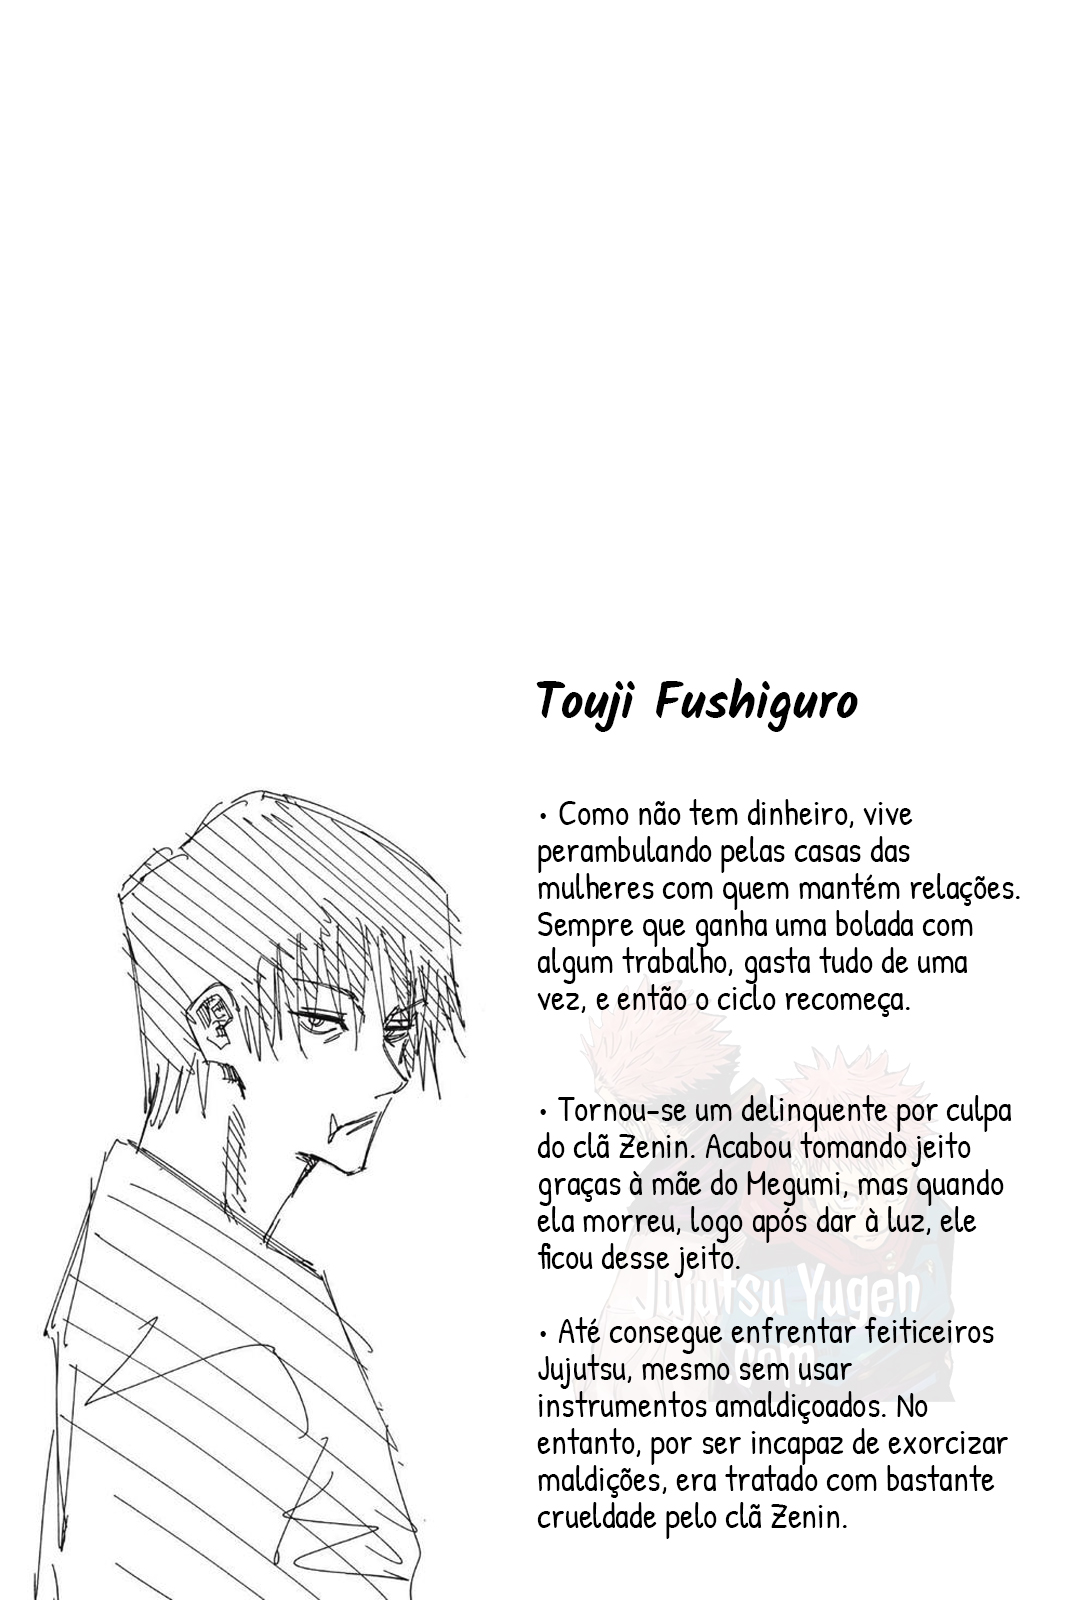 vol9-ficha-touji-fushiguro